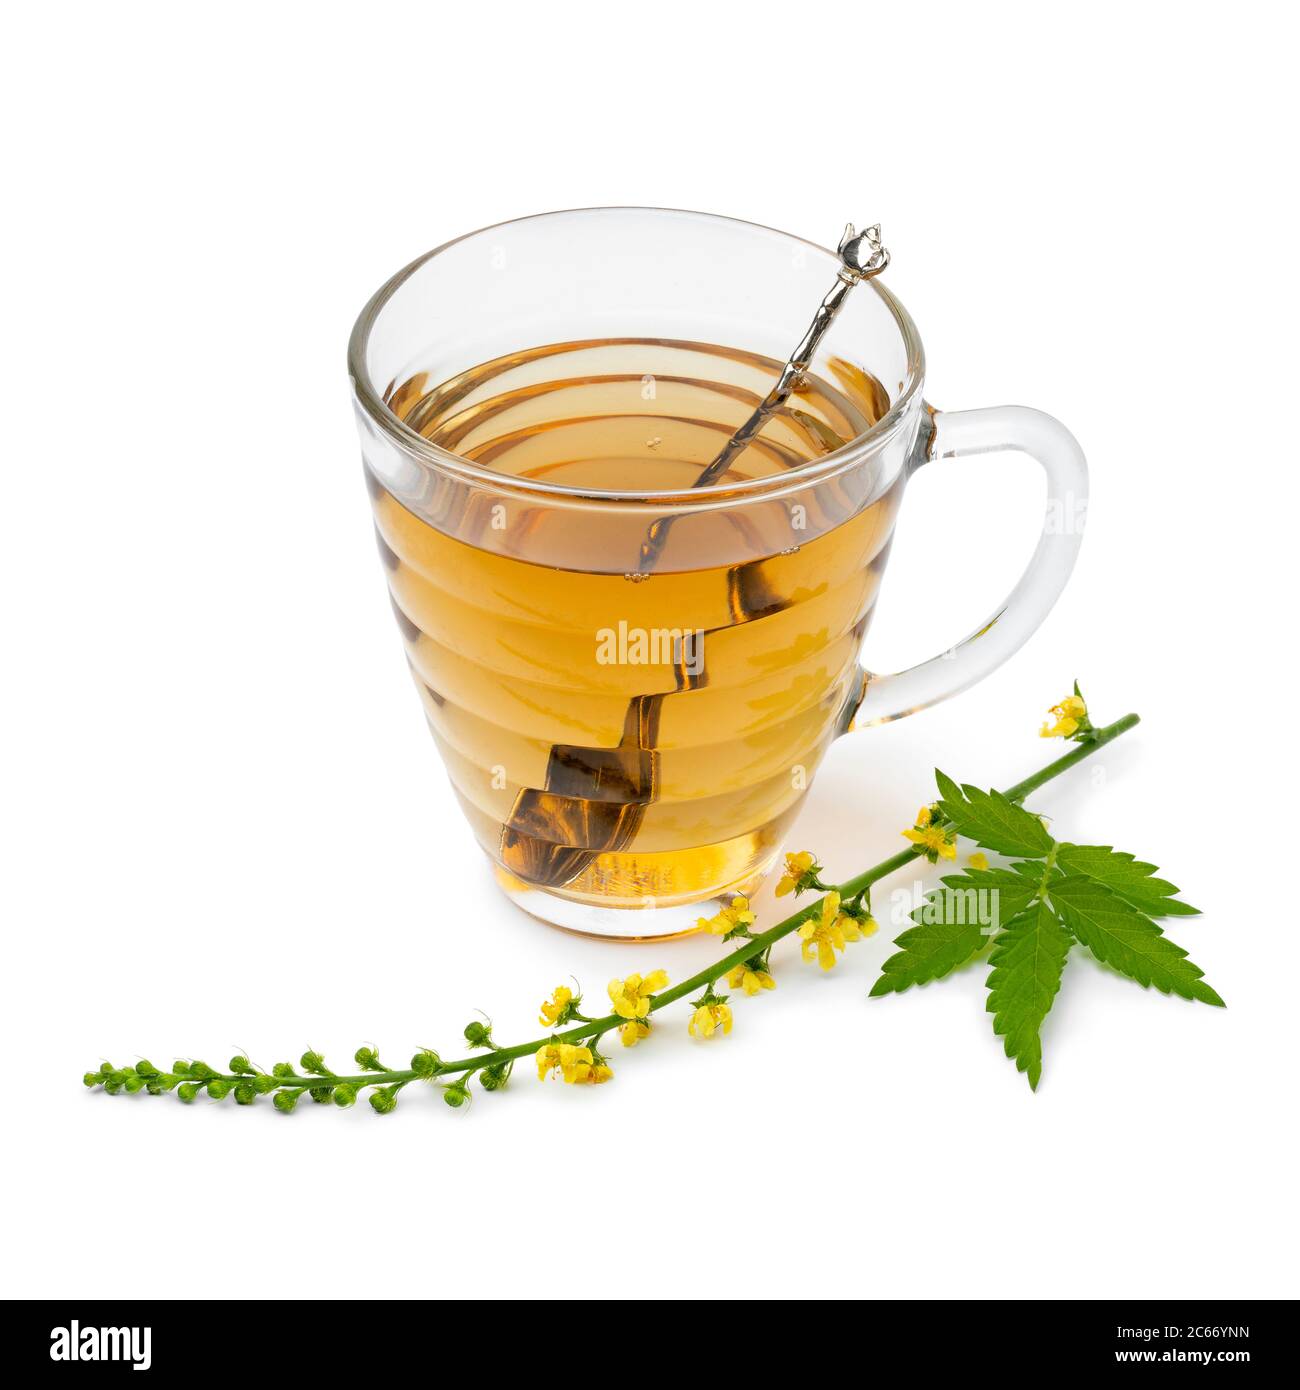 Glasplatten mit Agrimony Tee und einem frischen Zweig von Agrimony Blumen isoliert auf weißem Hintergrund Stockfoto